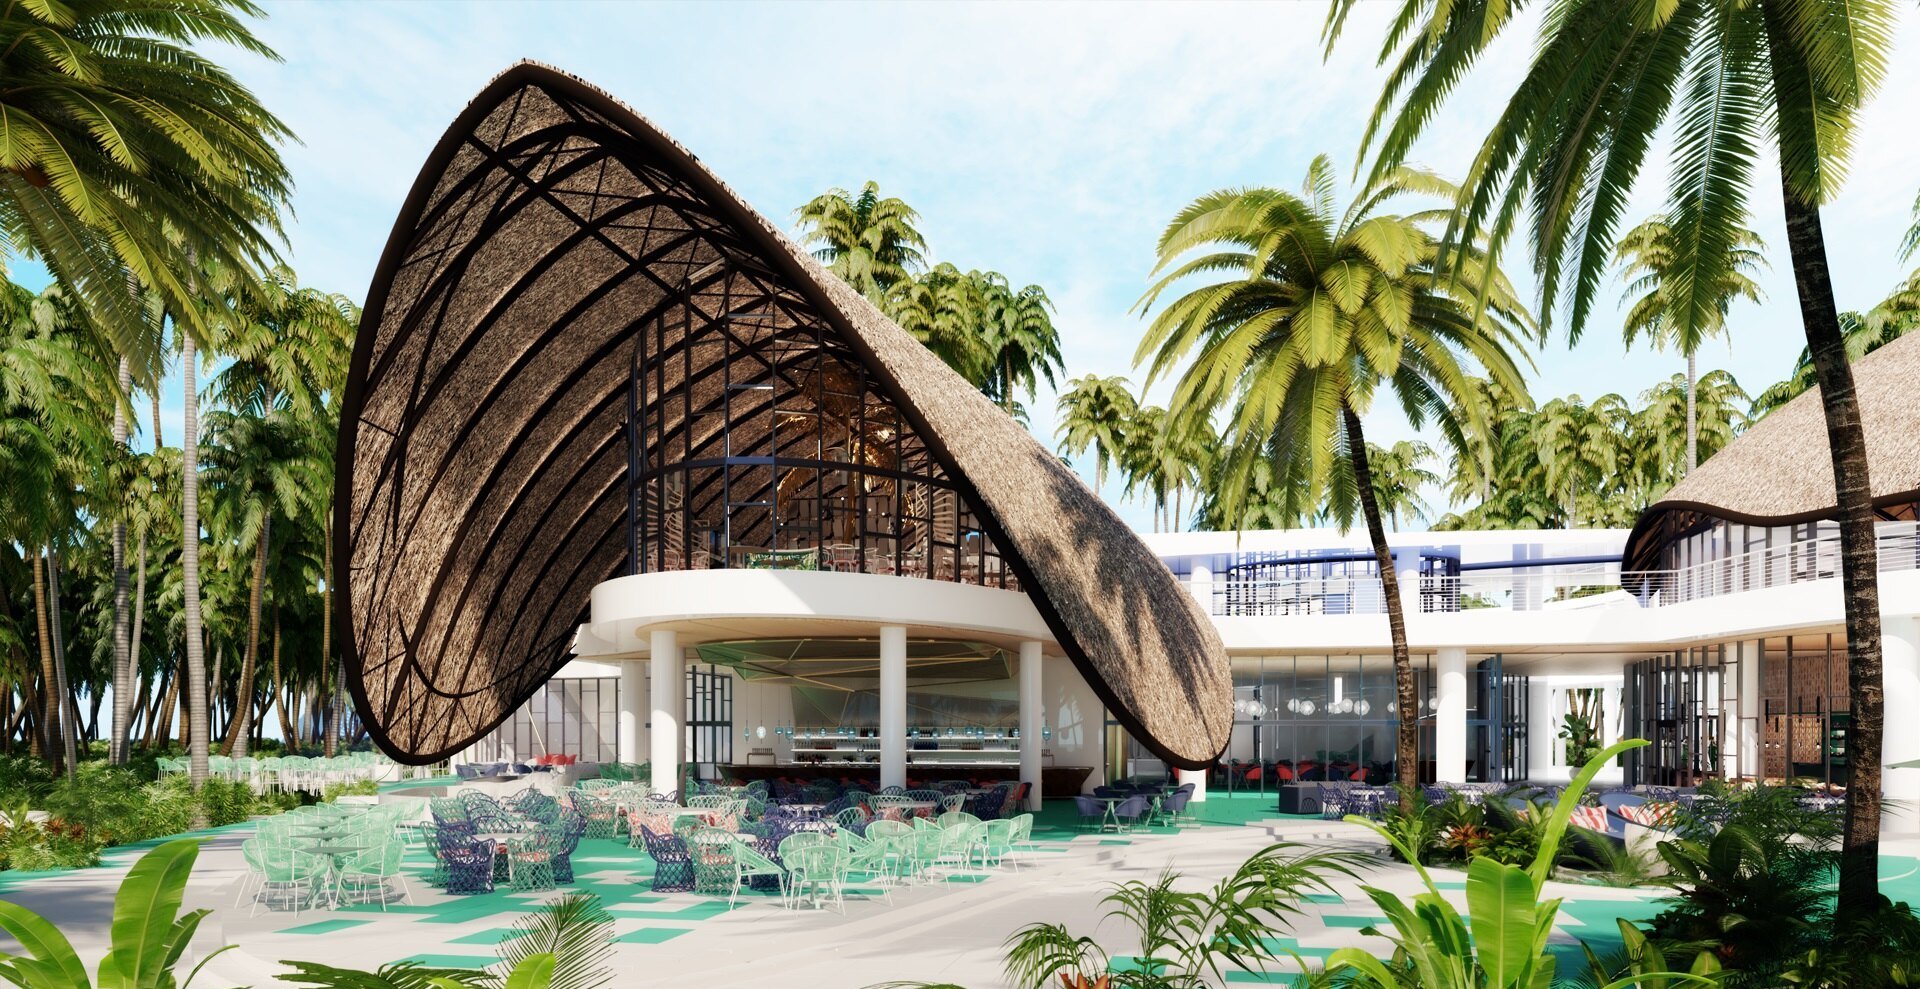 Club Med anuncia descuentos de un 45% para estadías en sus resorts de Punta Cana y Miches